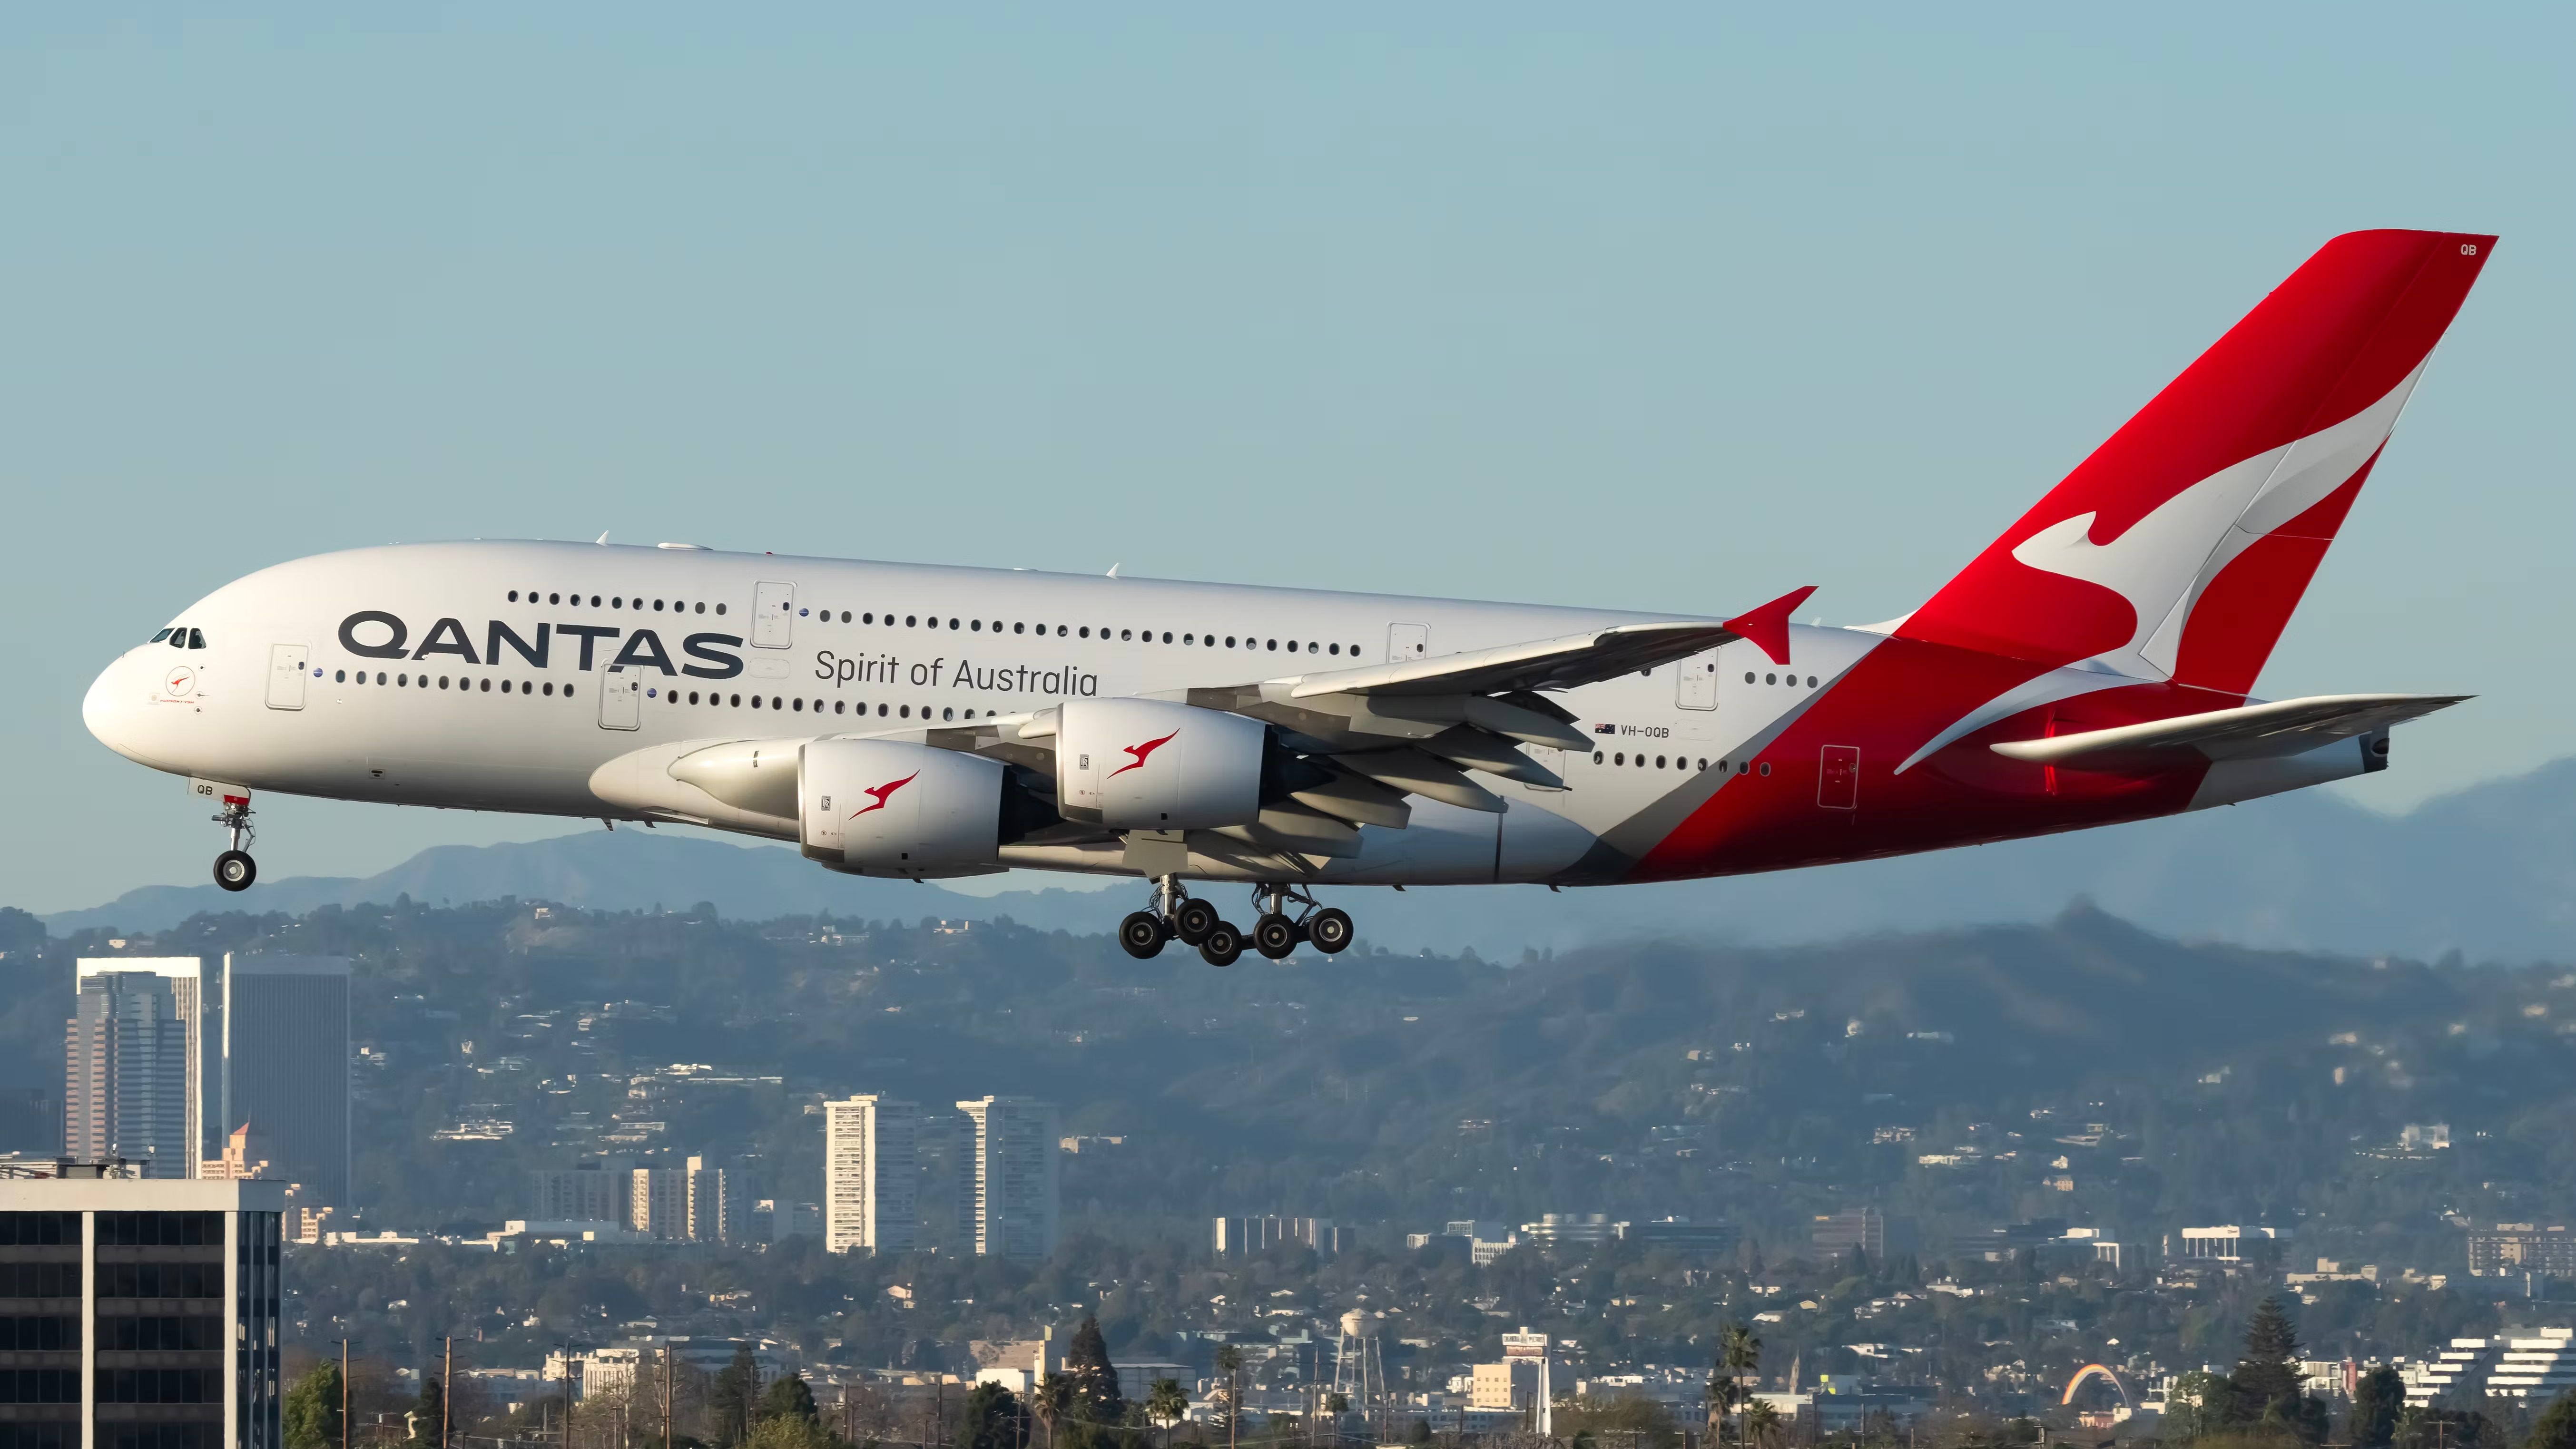 Qantas Airbus A380 landing at Los Angeles International Airport